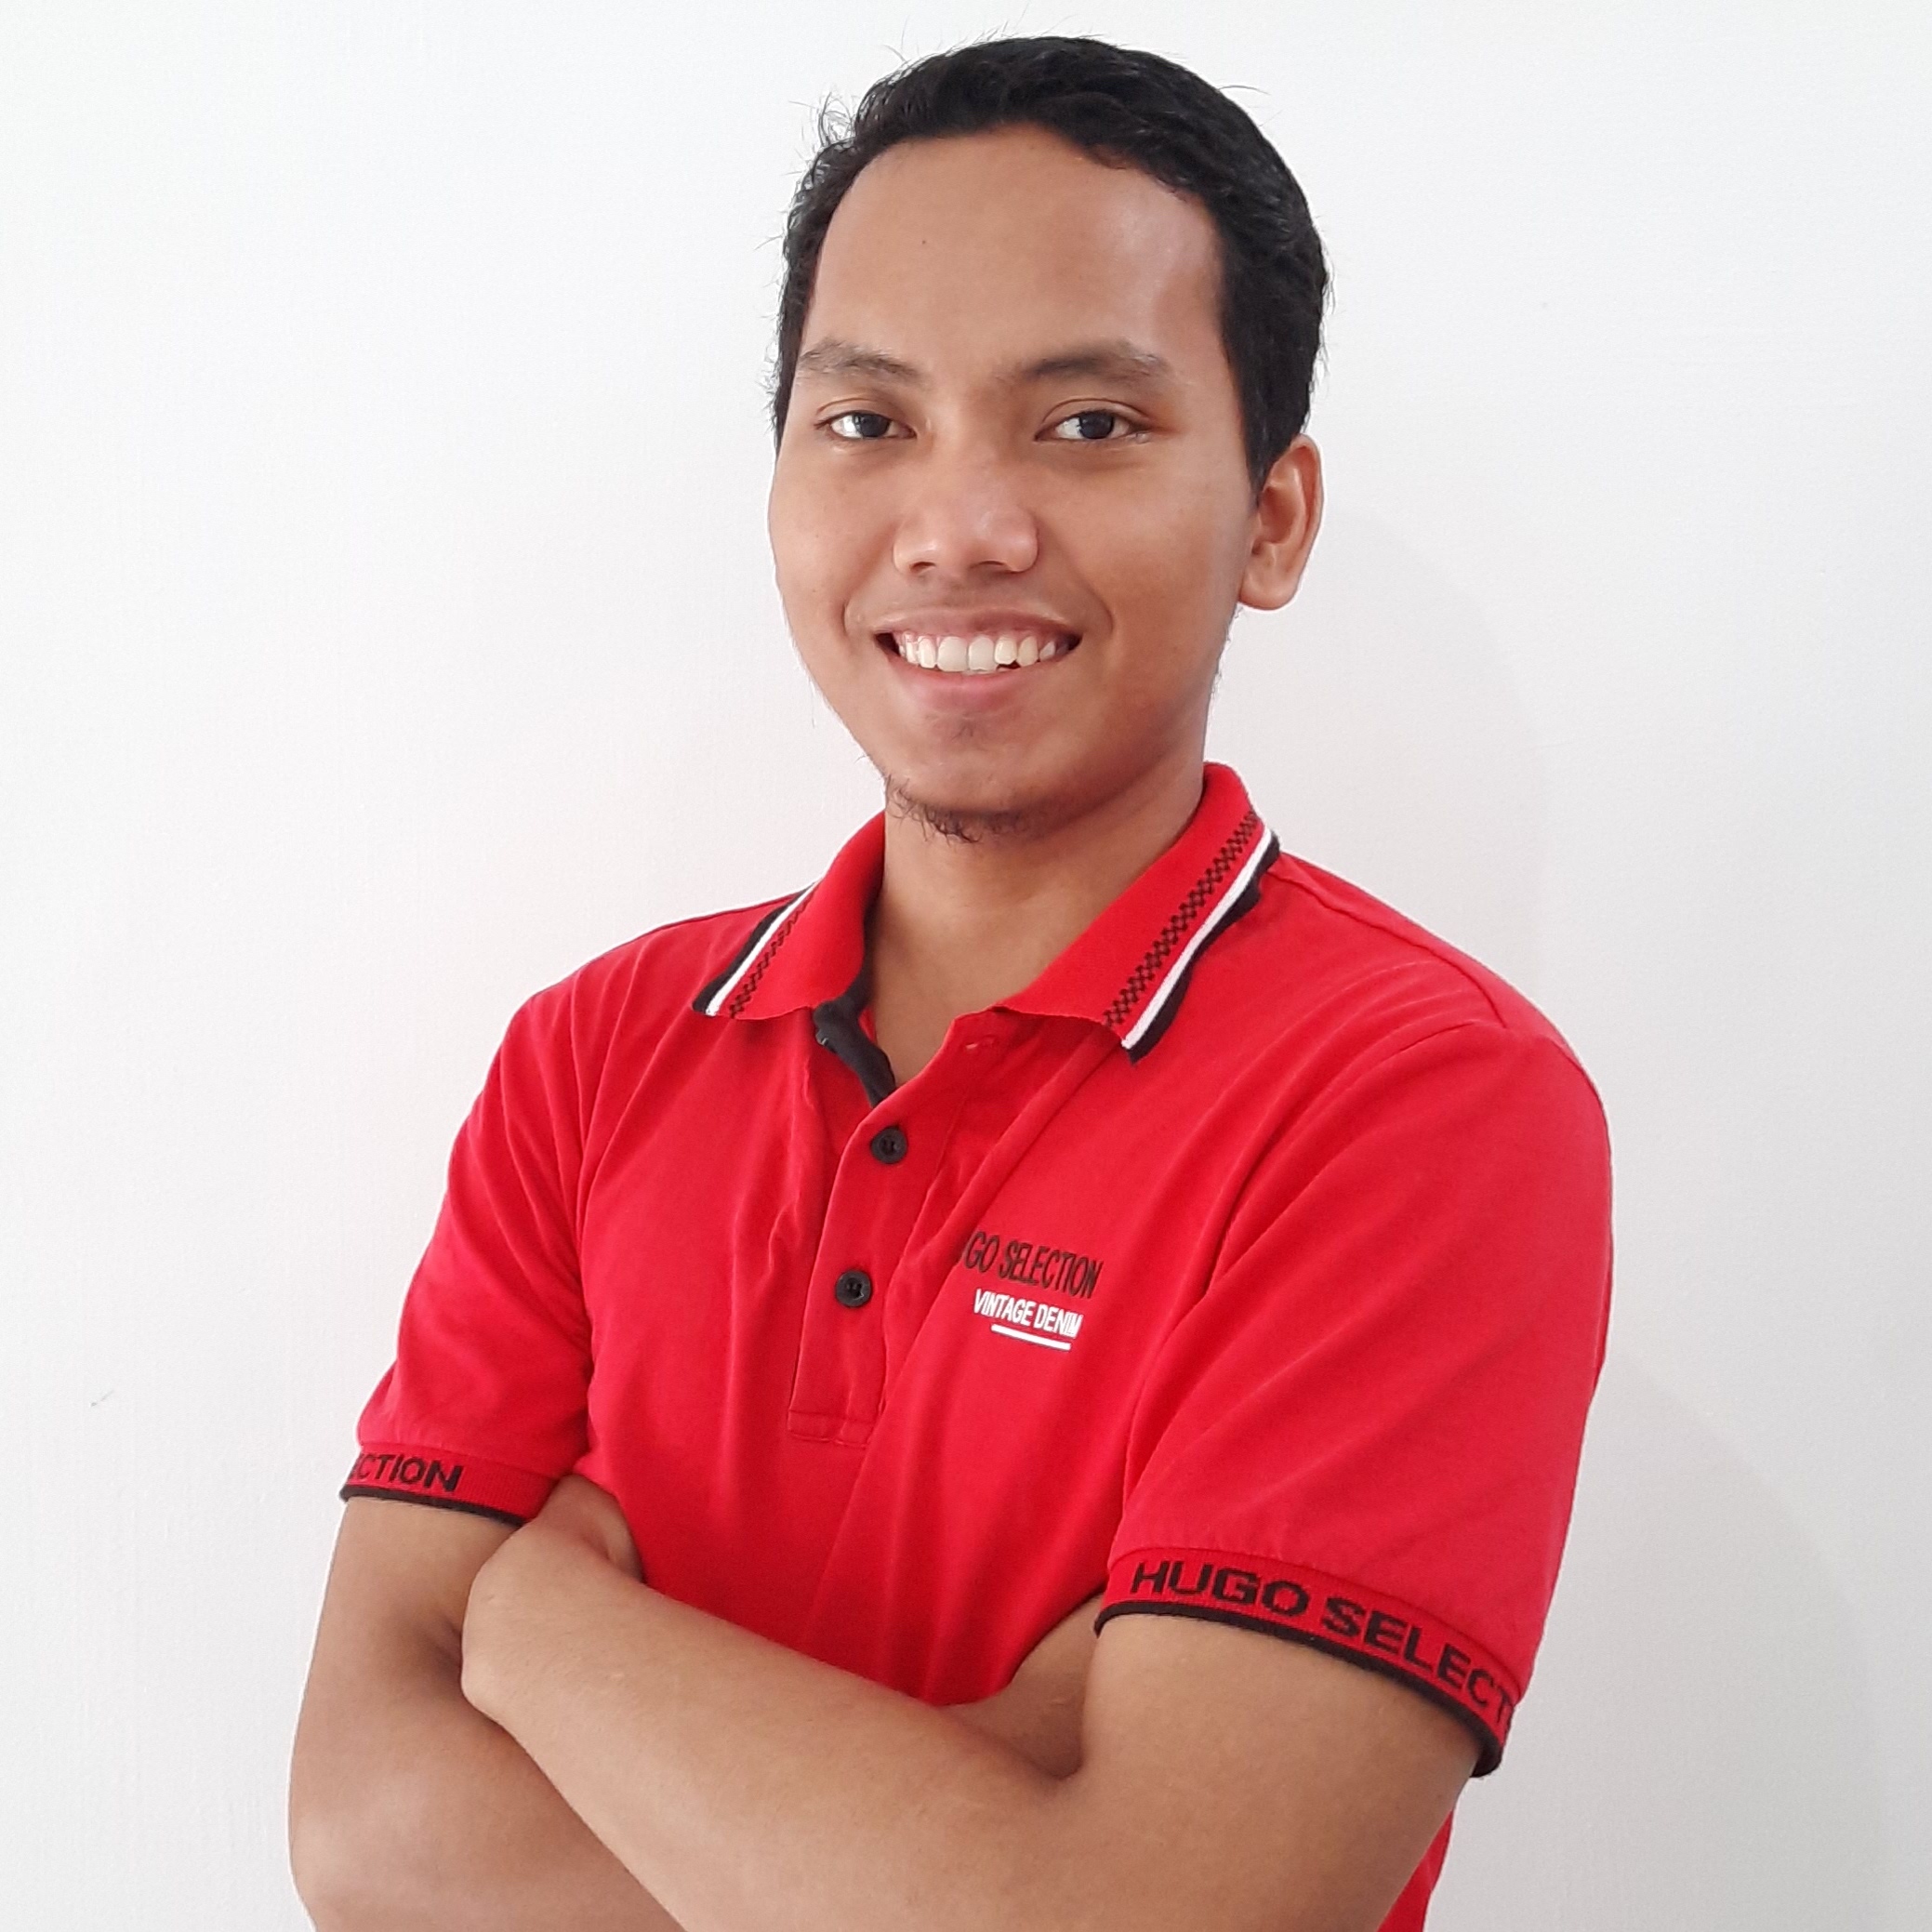 M Rizky Syahputra at BuildWithAngga